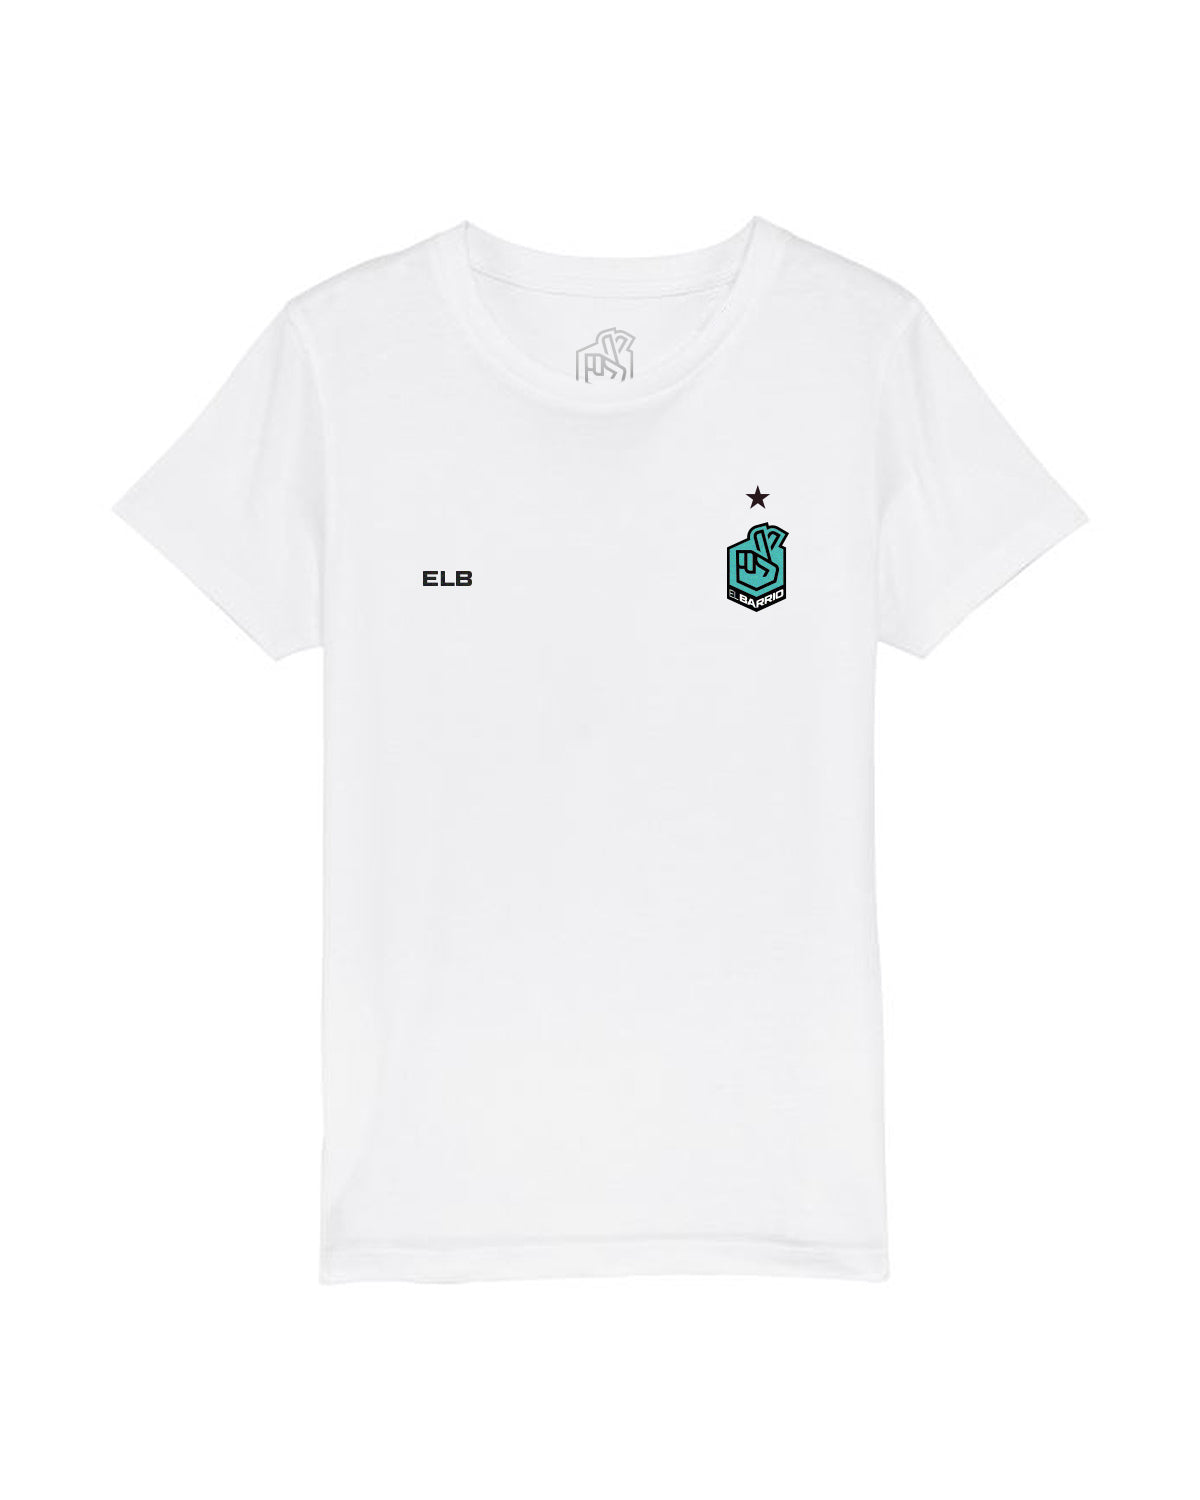 ELB - Camiseta Niño/a